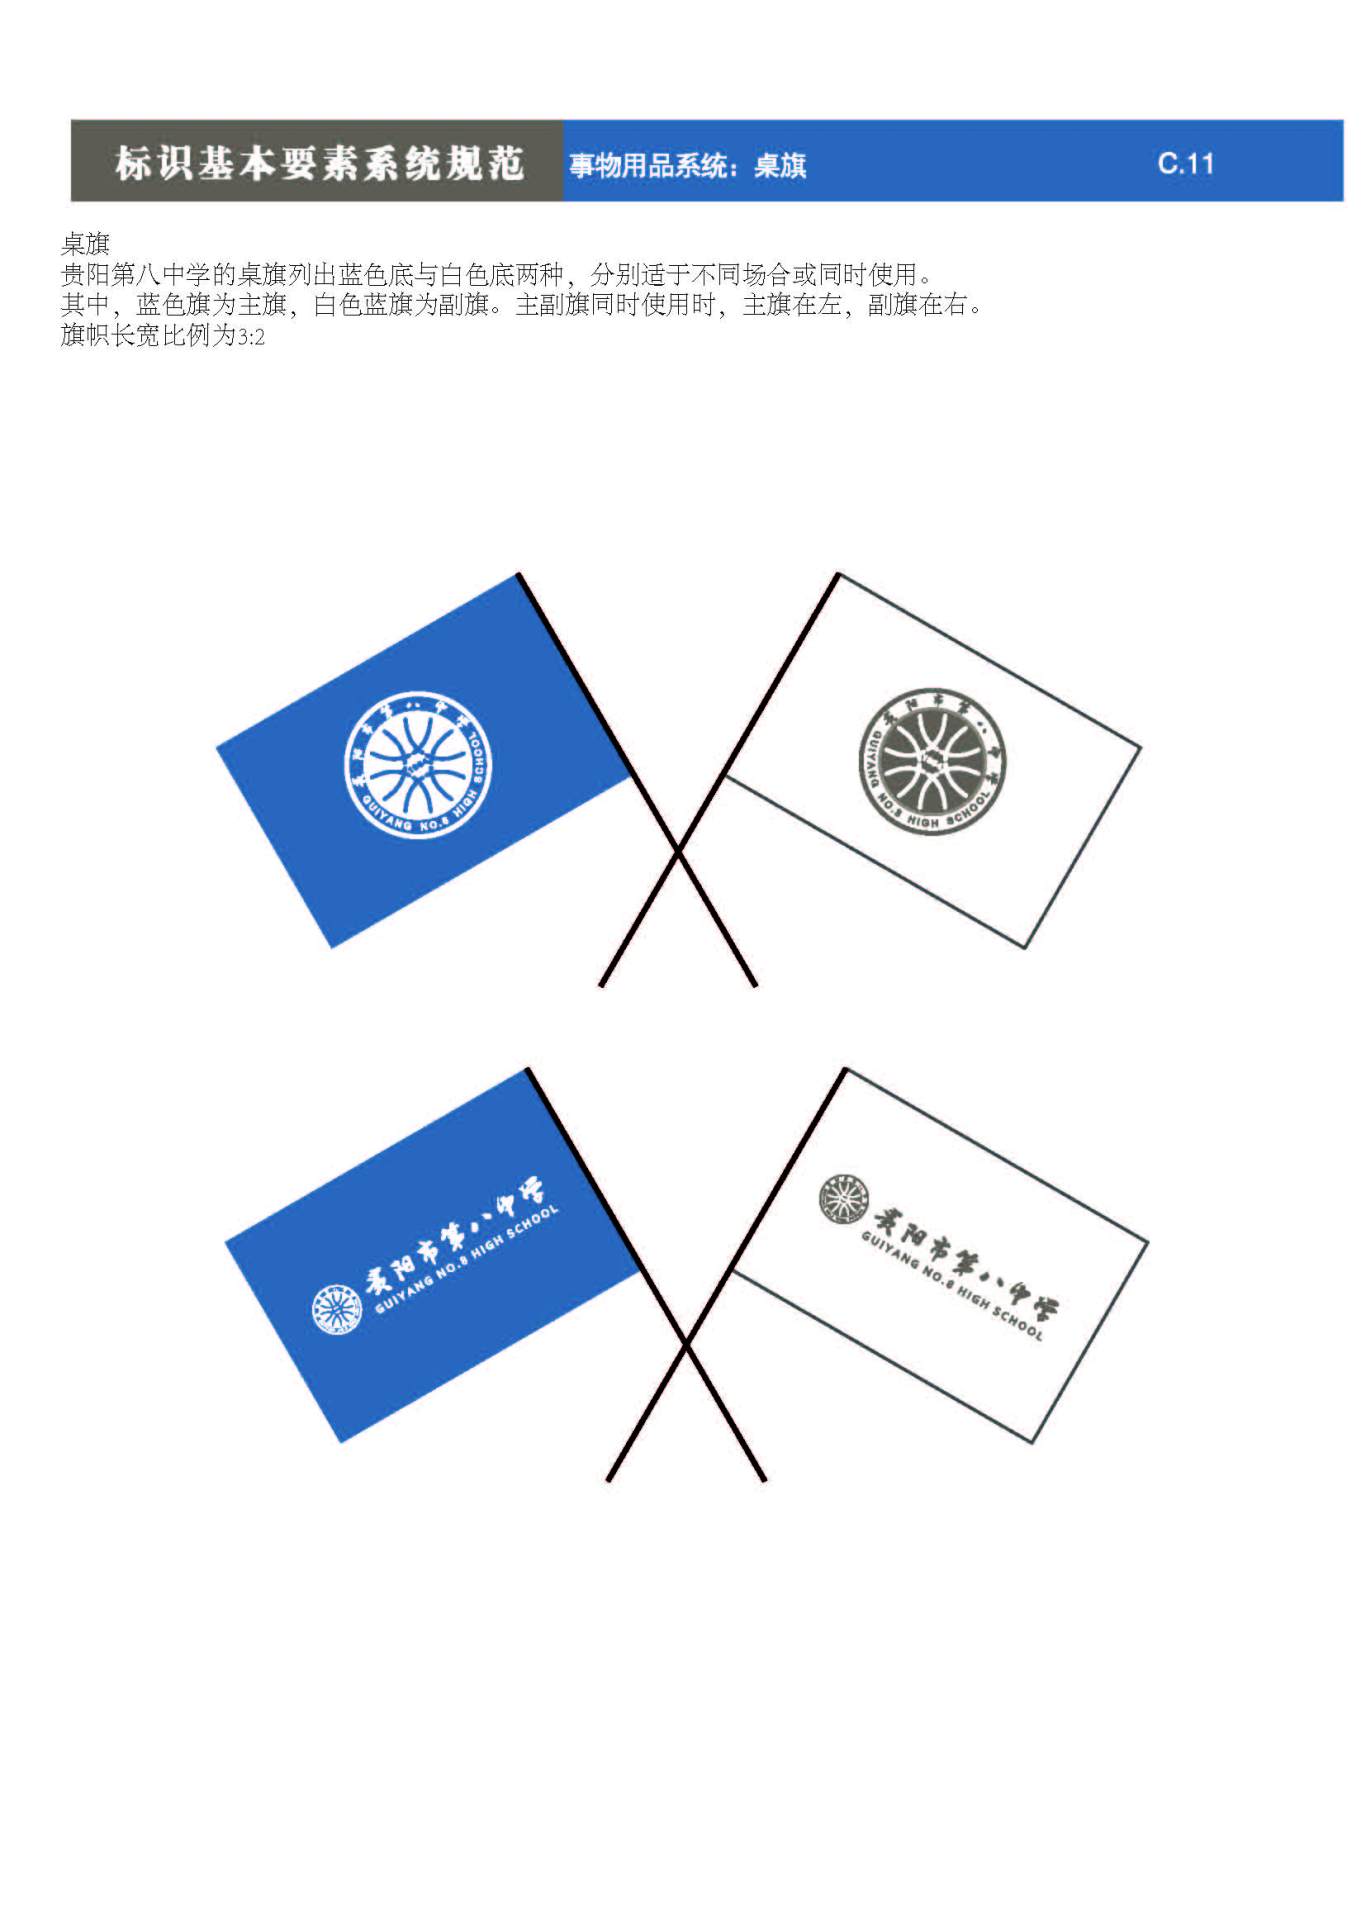 貴陽第八中學Logo、VIS設計圖65